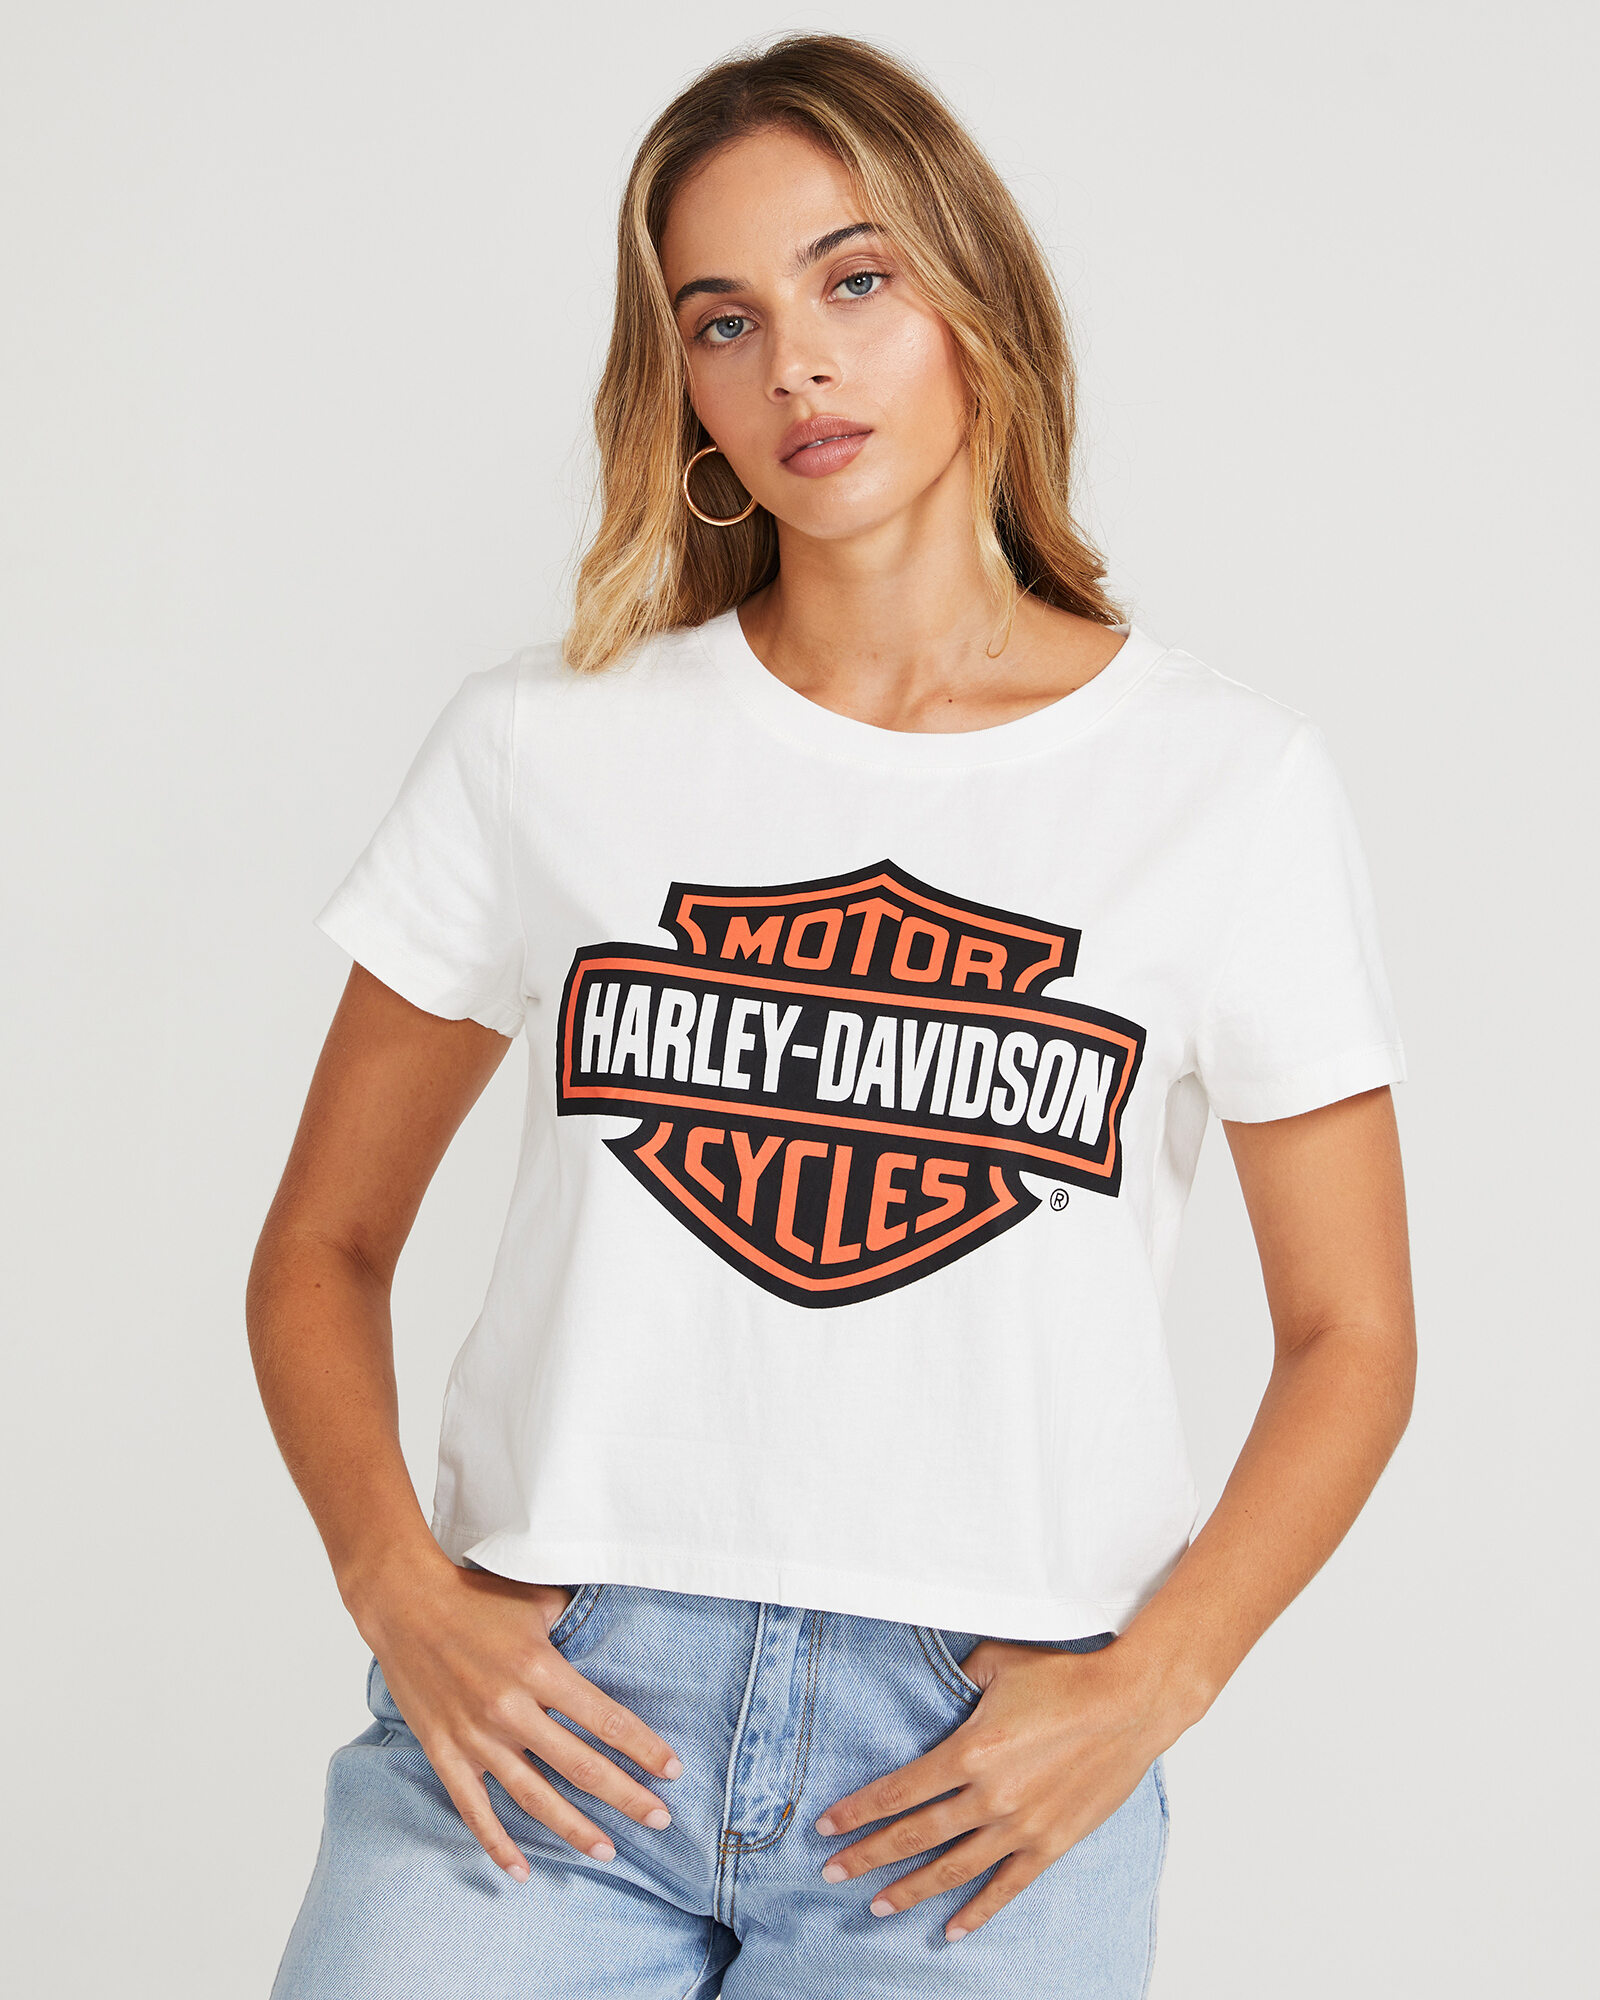 Pink Harley Davidson T Shirt Promotion Off63